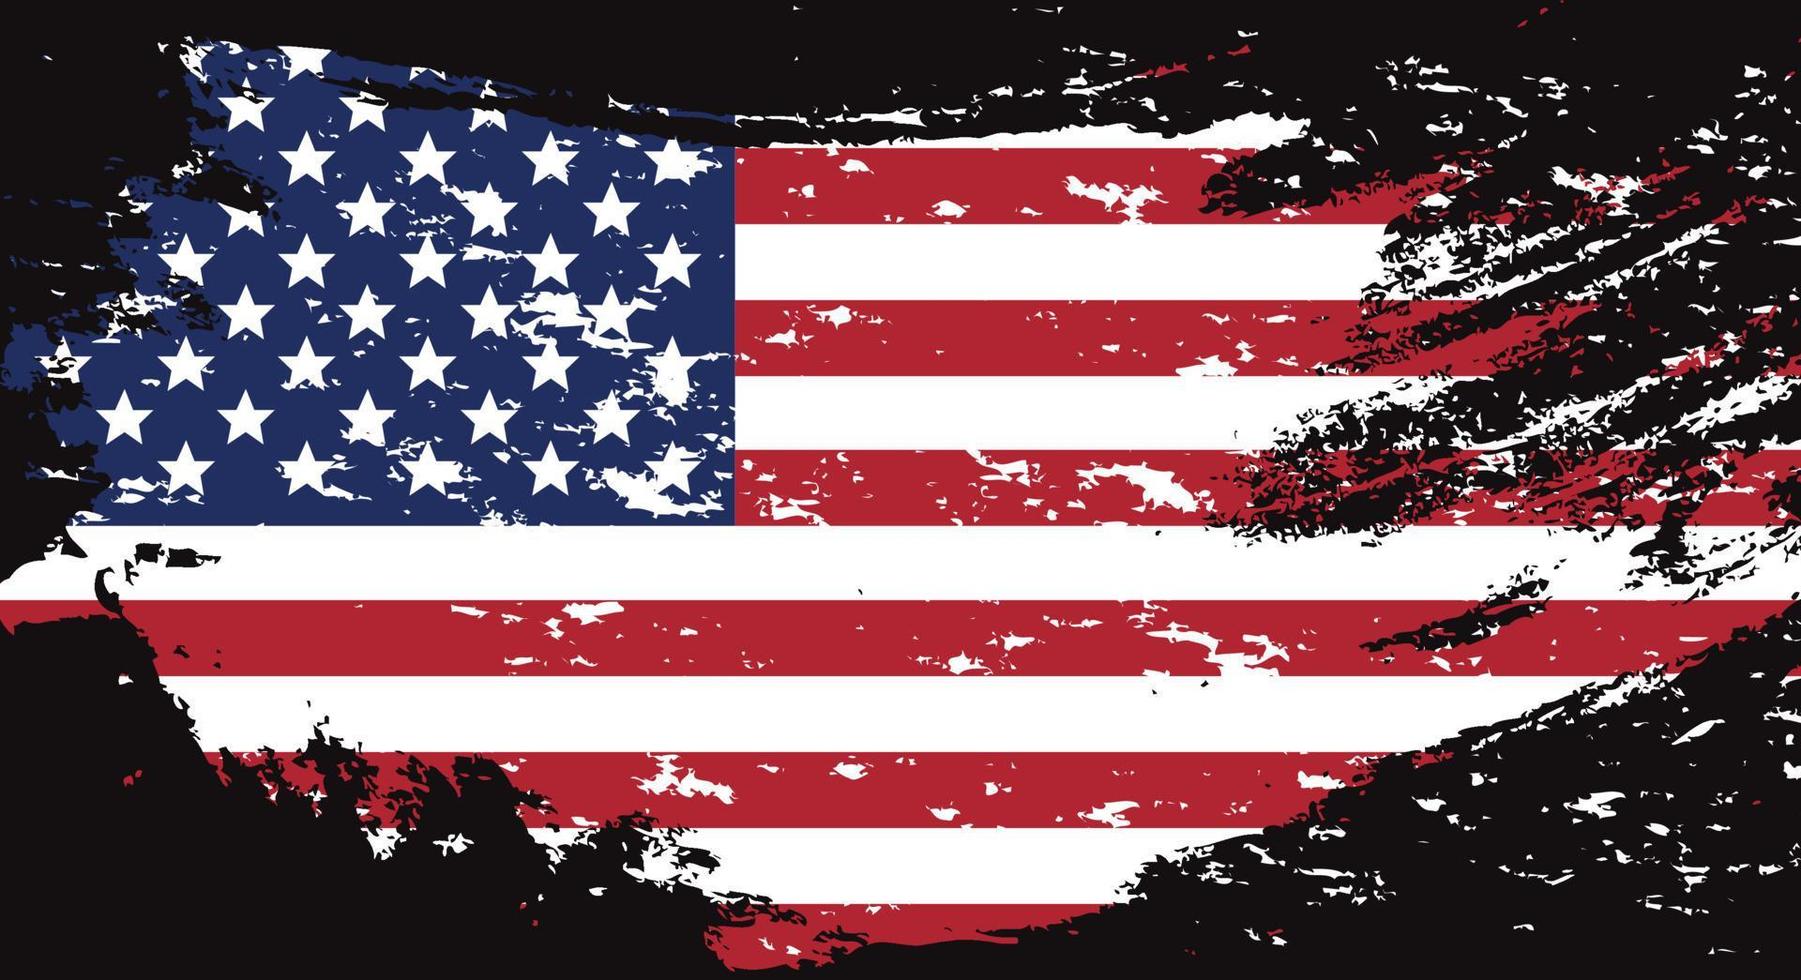 bandiera usa in stile grunge. pennellata usa flag.old sporca bandiera americana. simbolo americano. illustrazione raster vettore